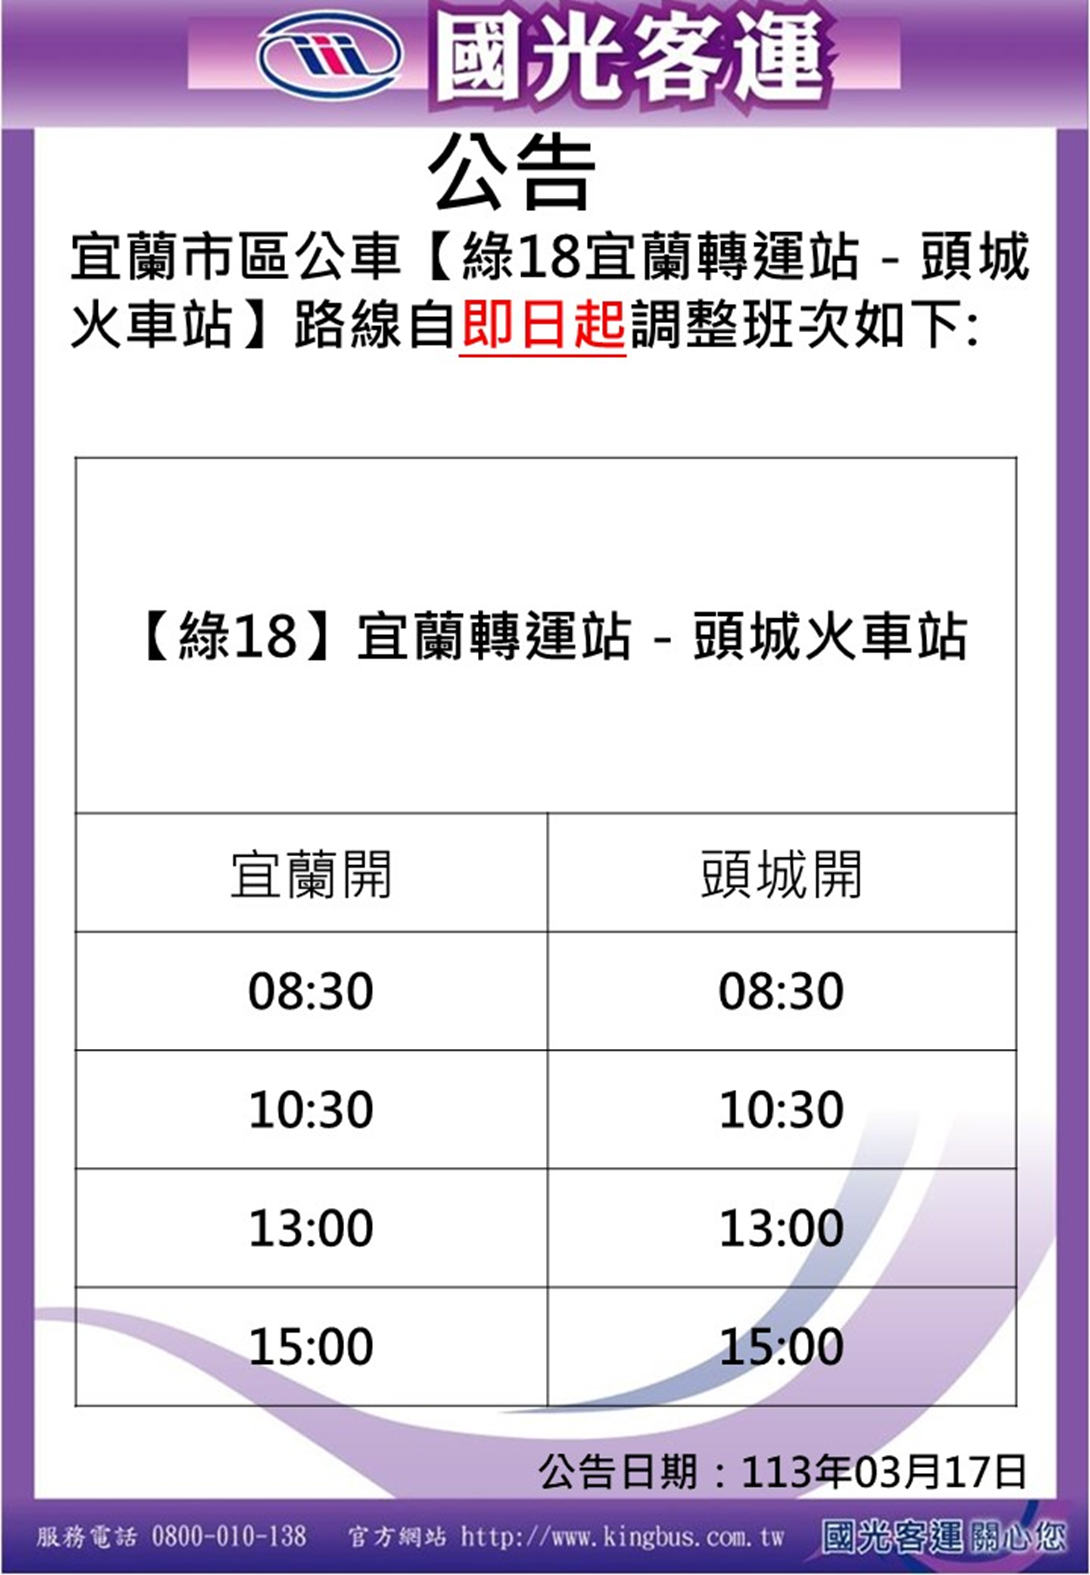 Taiwan Hao Xing Green 18 Zhuangwei Dune Line bus schedule changes